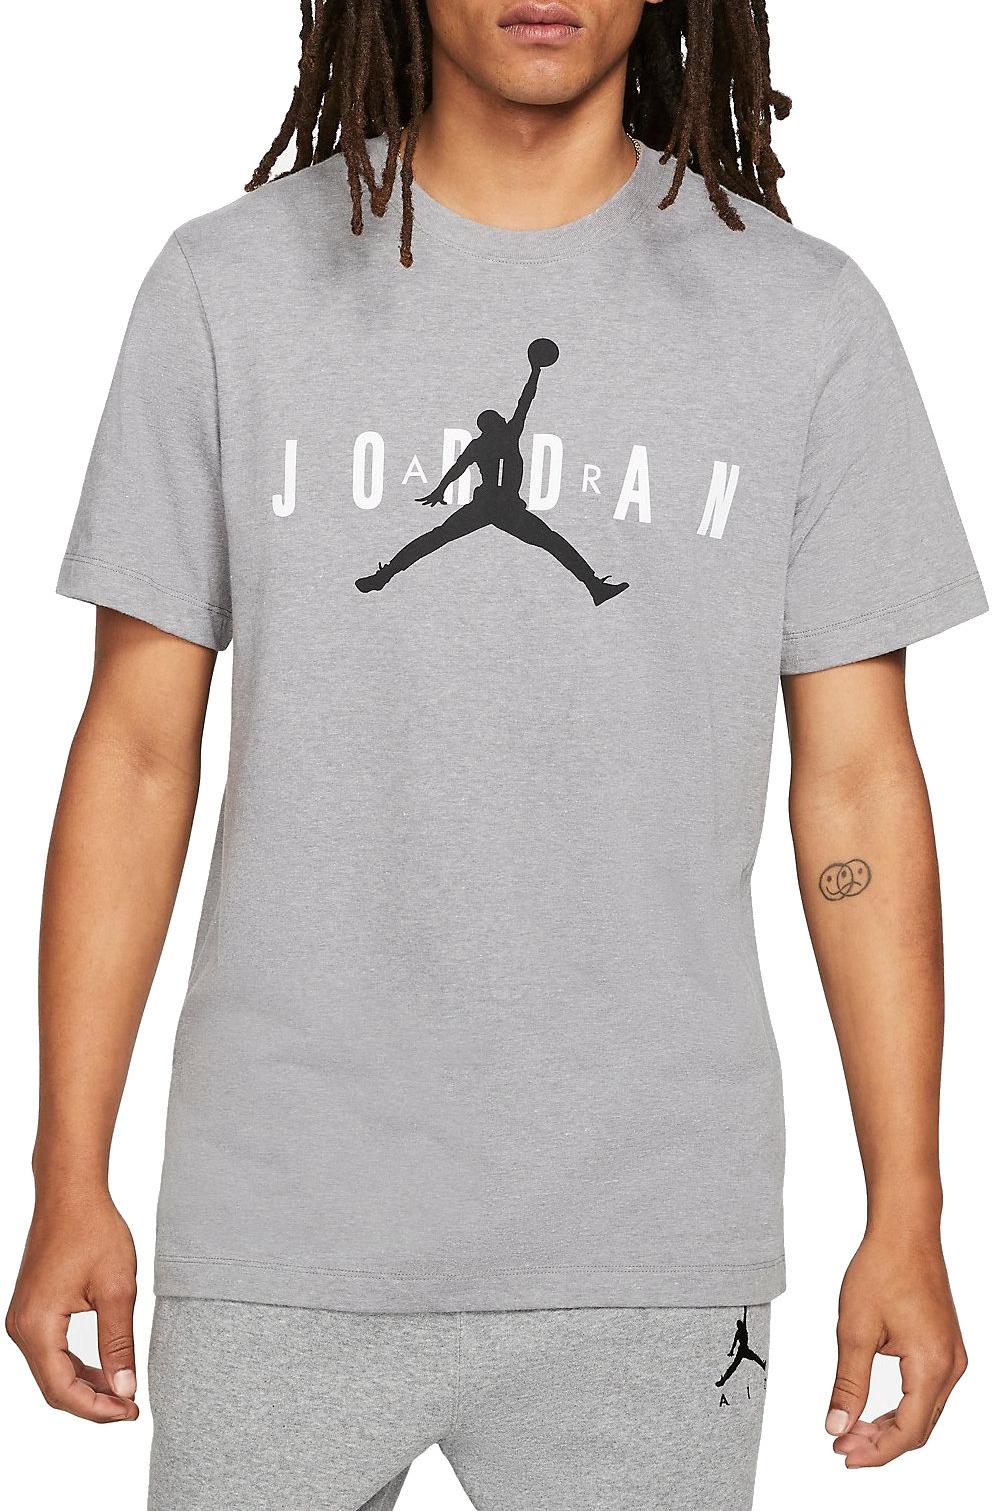 Camiseta Jordan Air Wordmark Men s T-Shirt